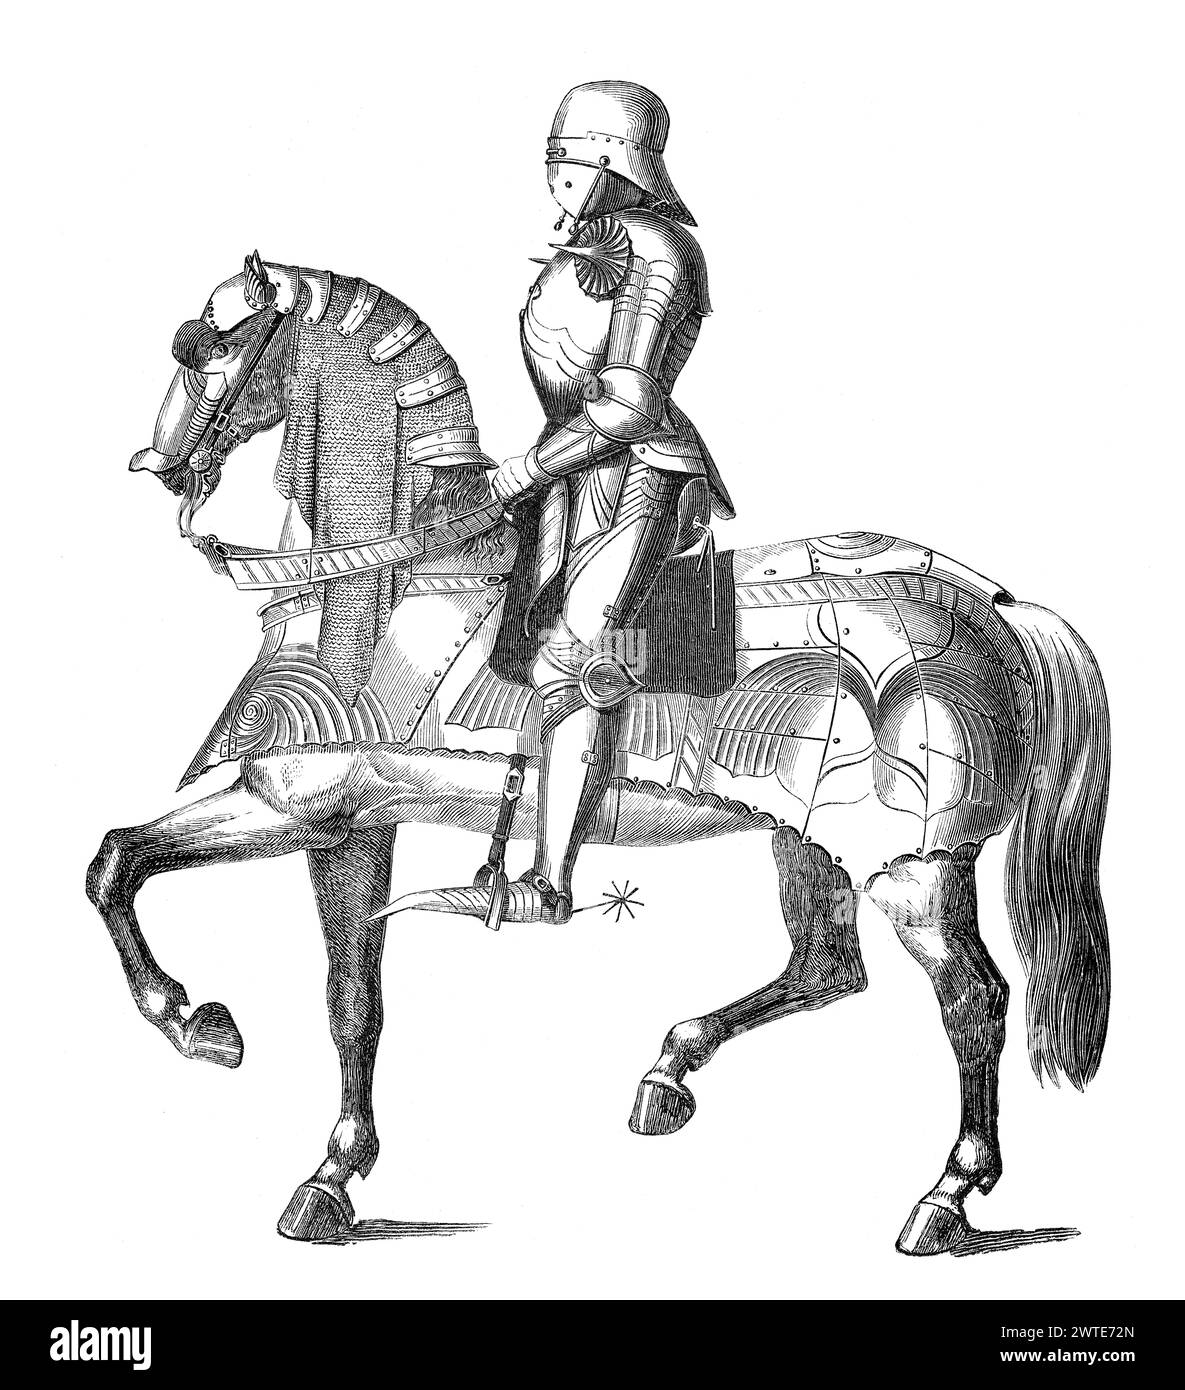 Ein mittelalterlicher Ritter, der auf einem Pferd reitet, Rüstung, 15. Jahrhundert Stockfoto